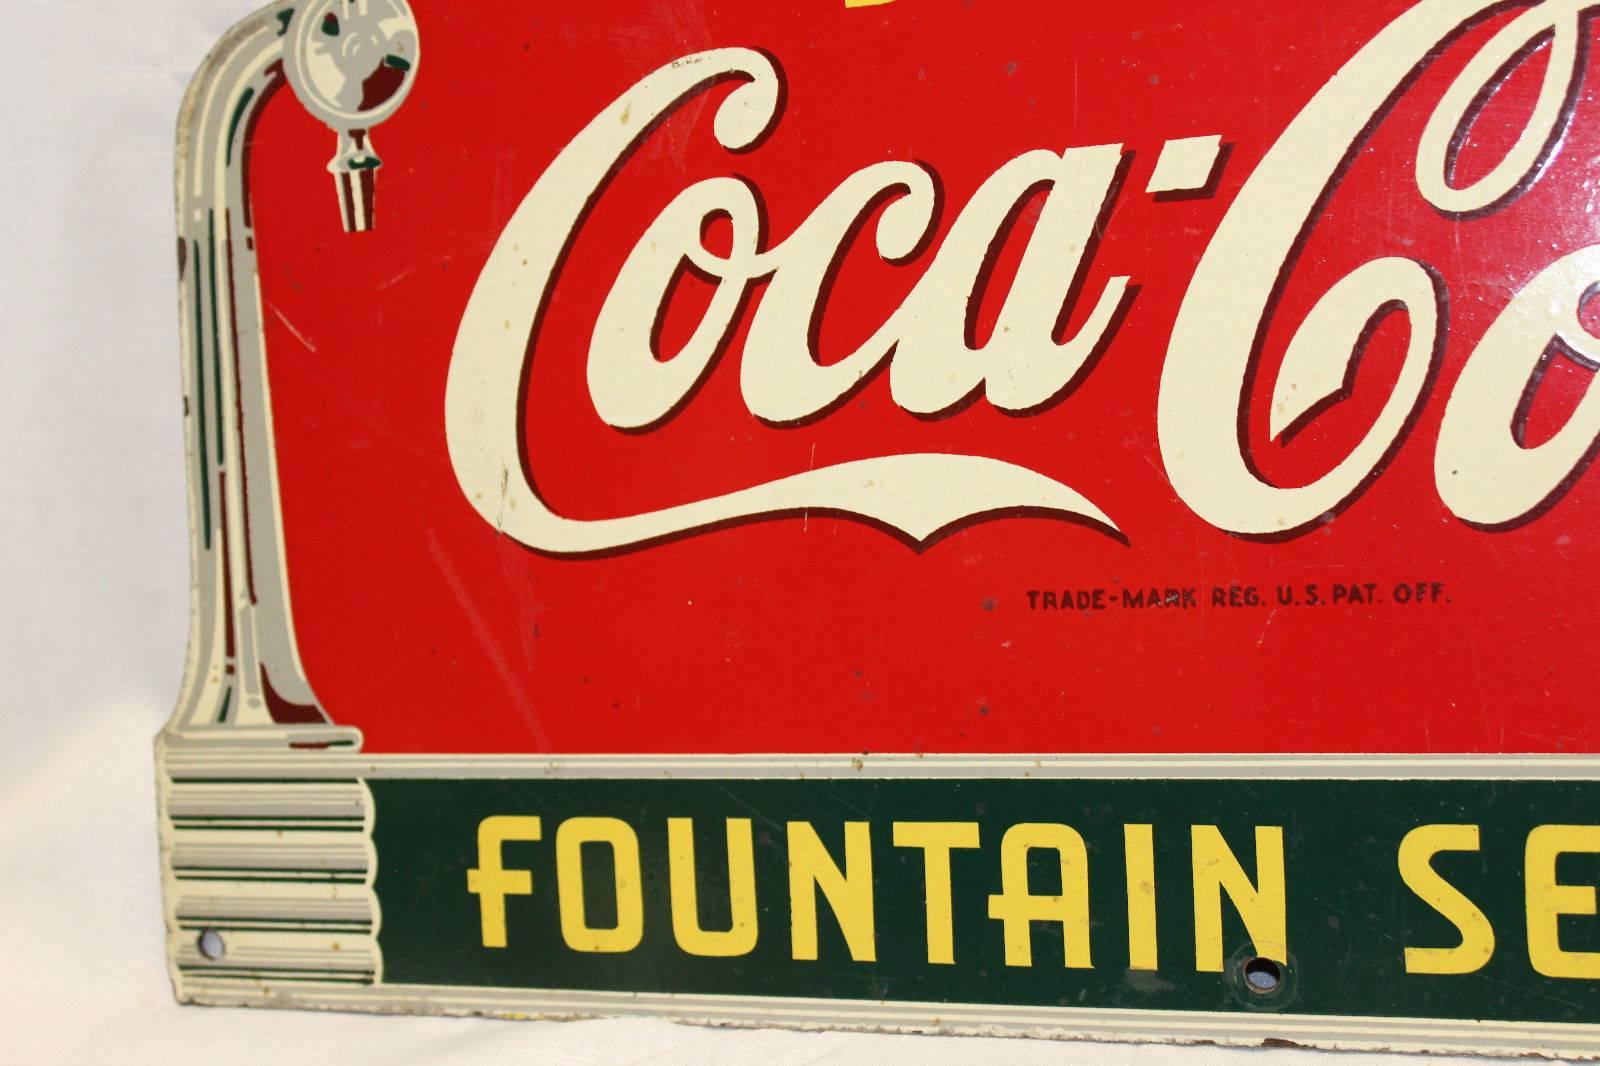 coca cola fountain service sign